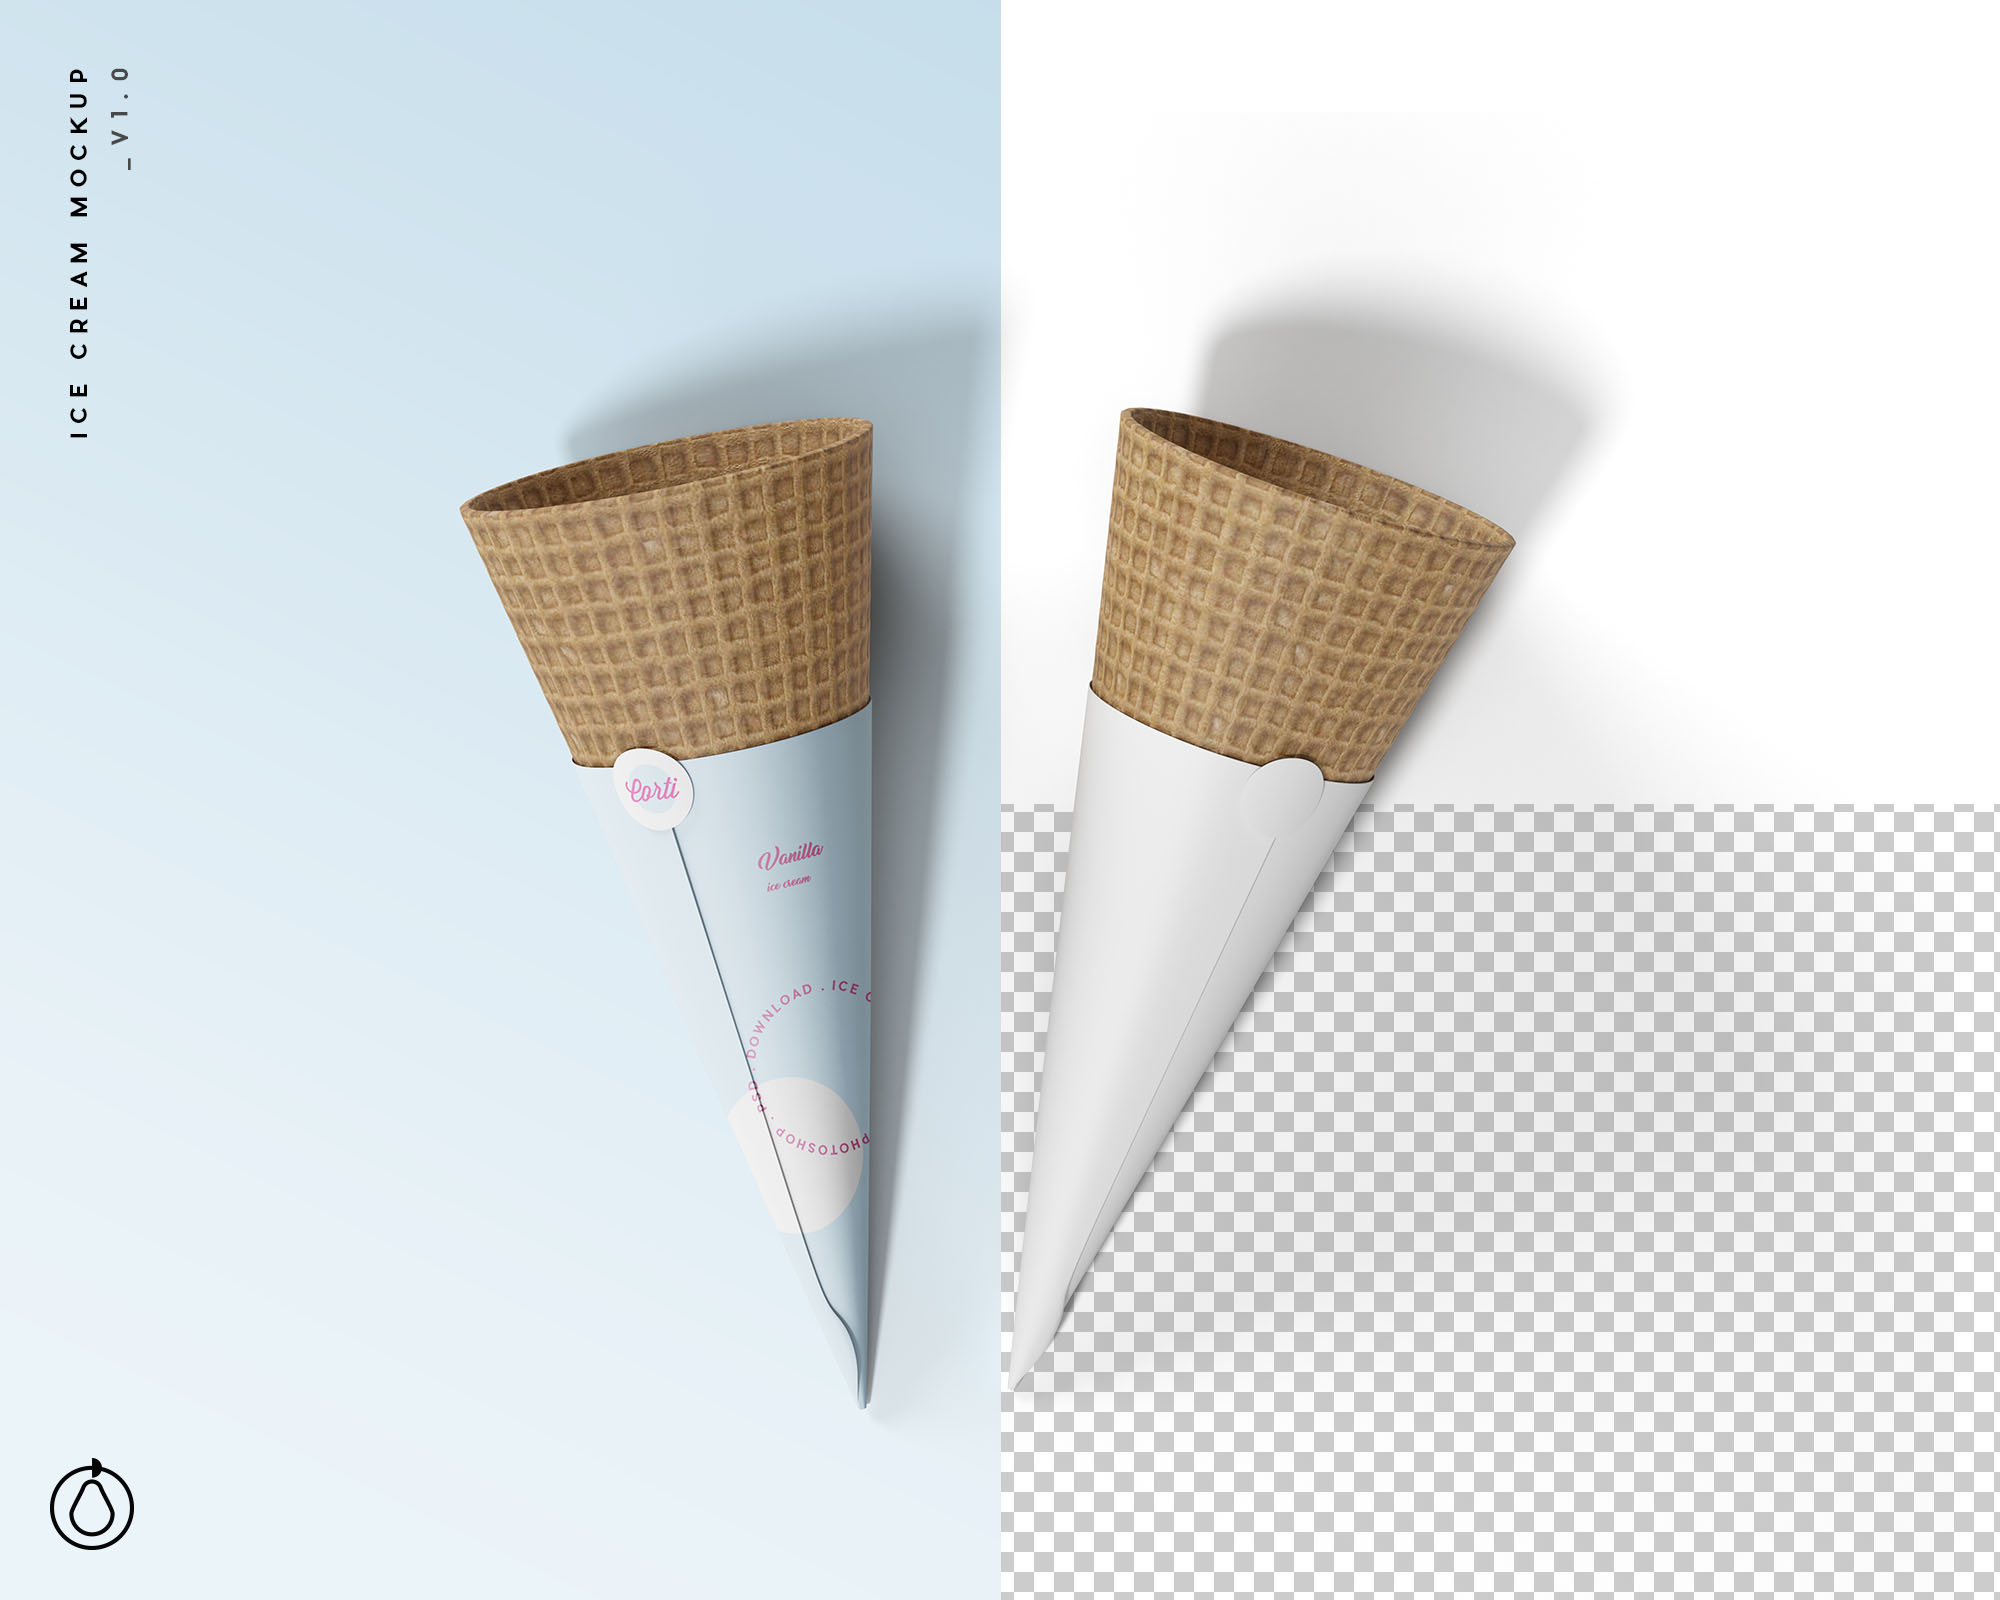 蛋卷冰淇淋包装纸设计样机模板 Ice Cream Cone Mockup插图(1)